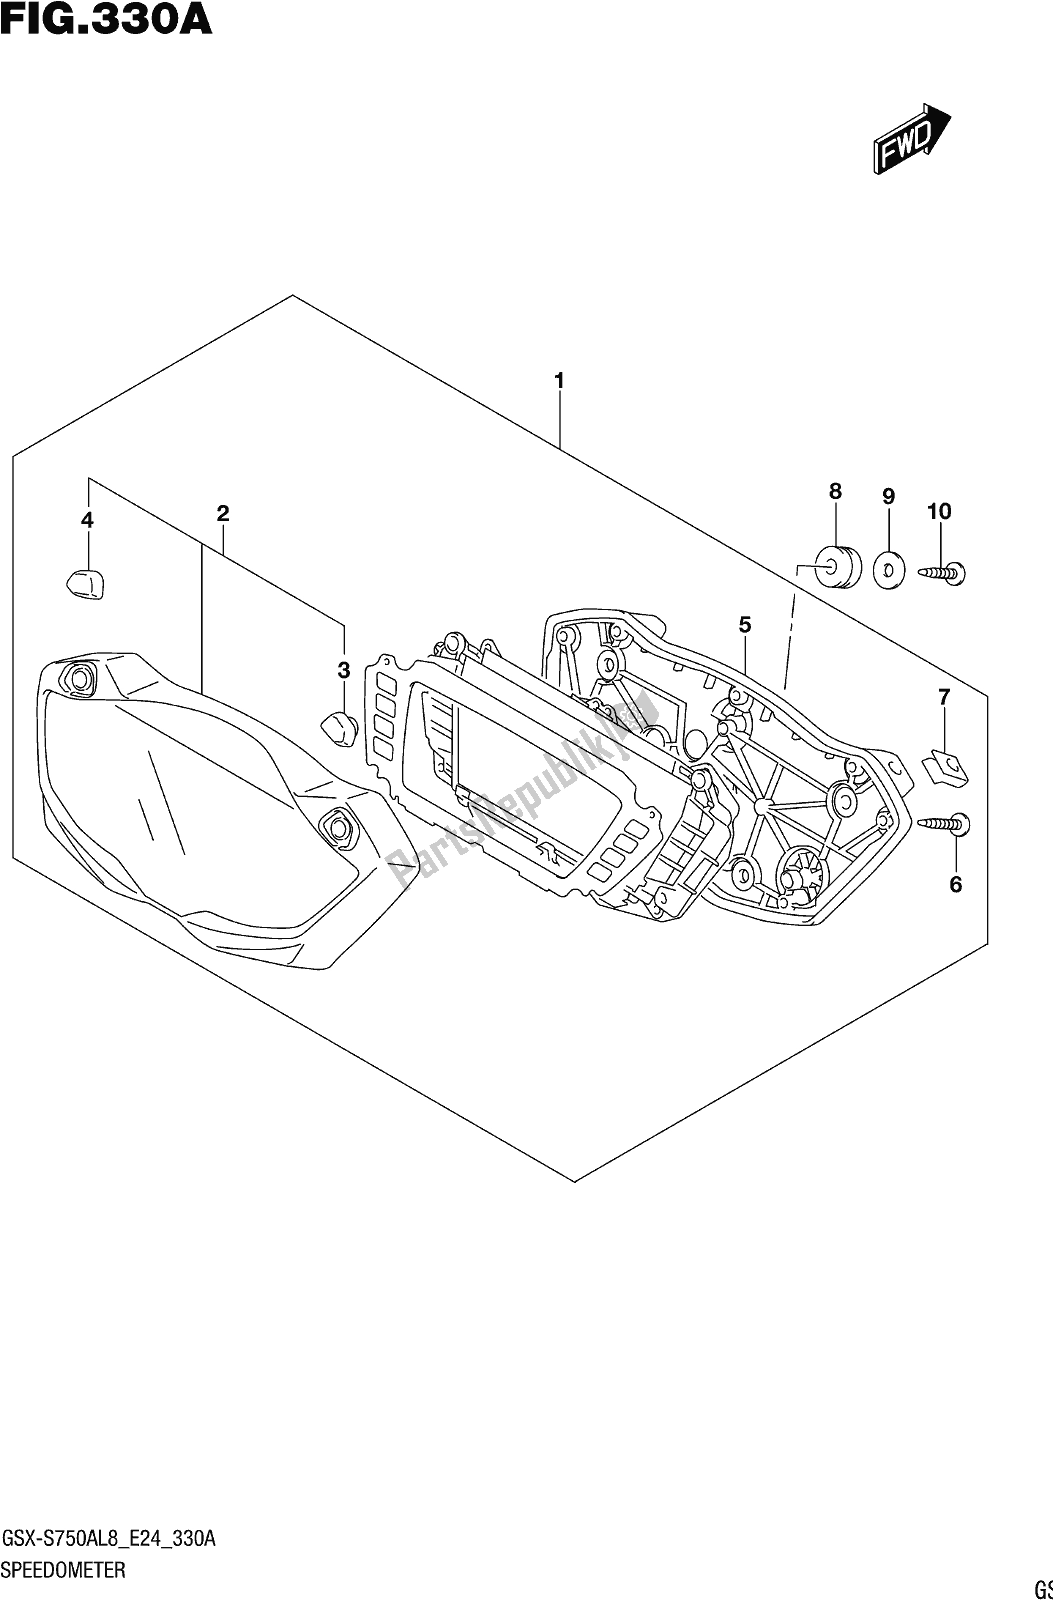 Alle onderdelen voor de Fig. 330a Speedometer van de Suzuki Gsx-s 750A 2018